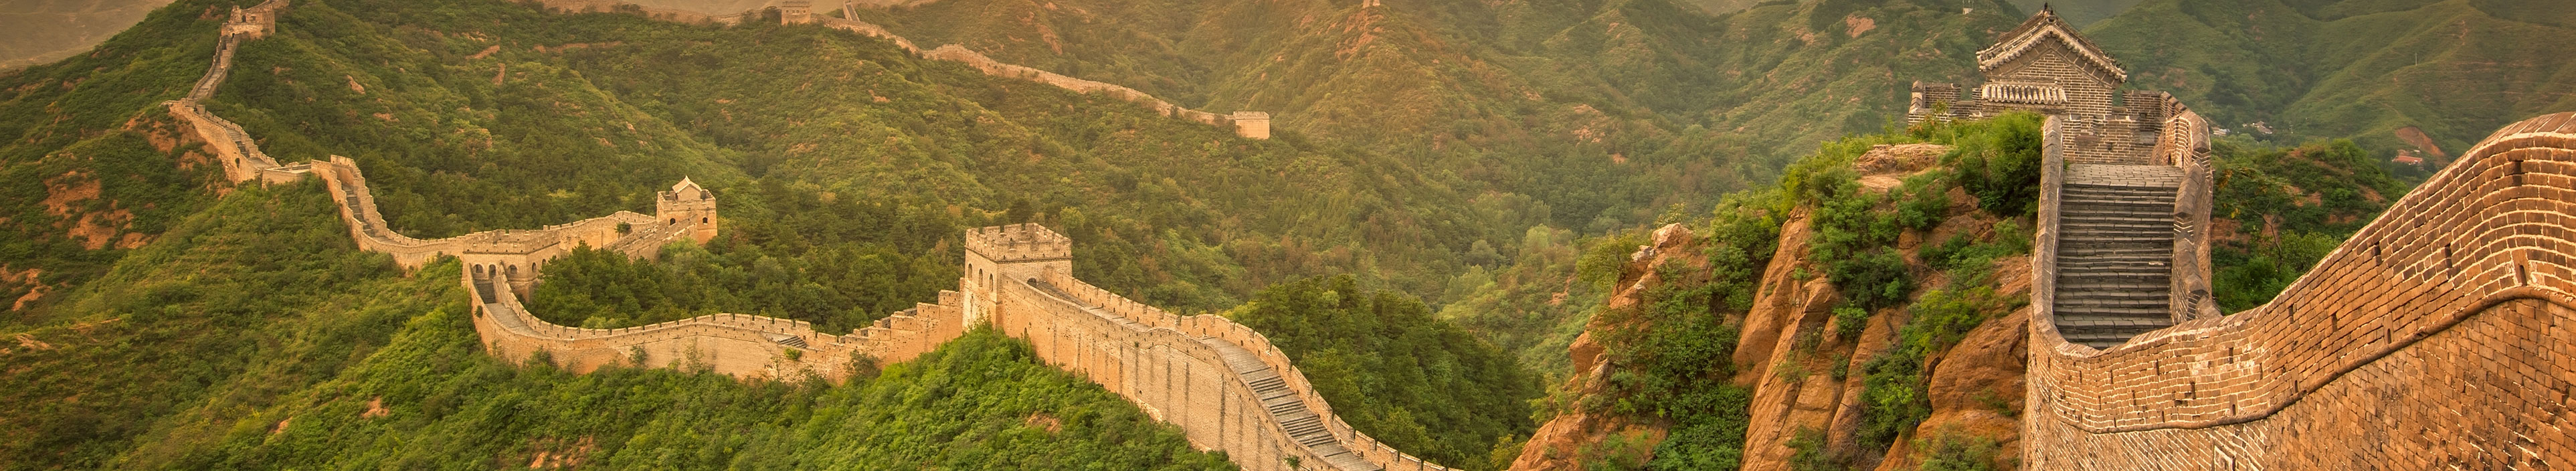 Blick auf die chinesische Mauer